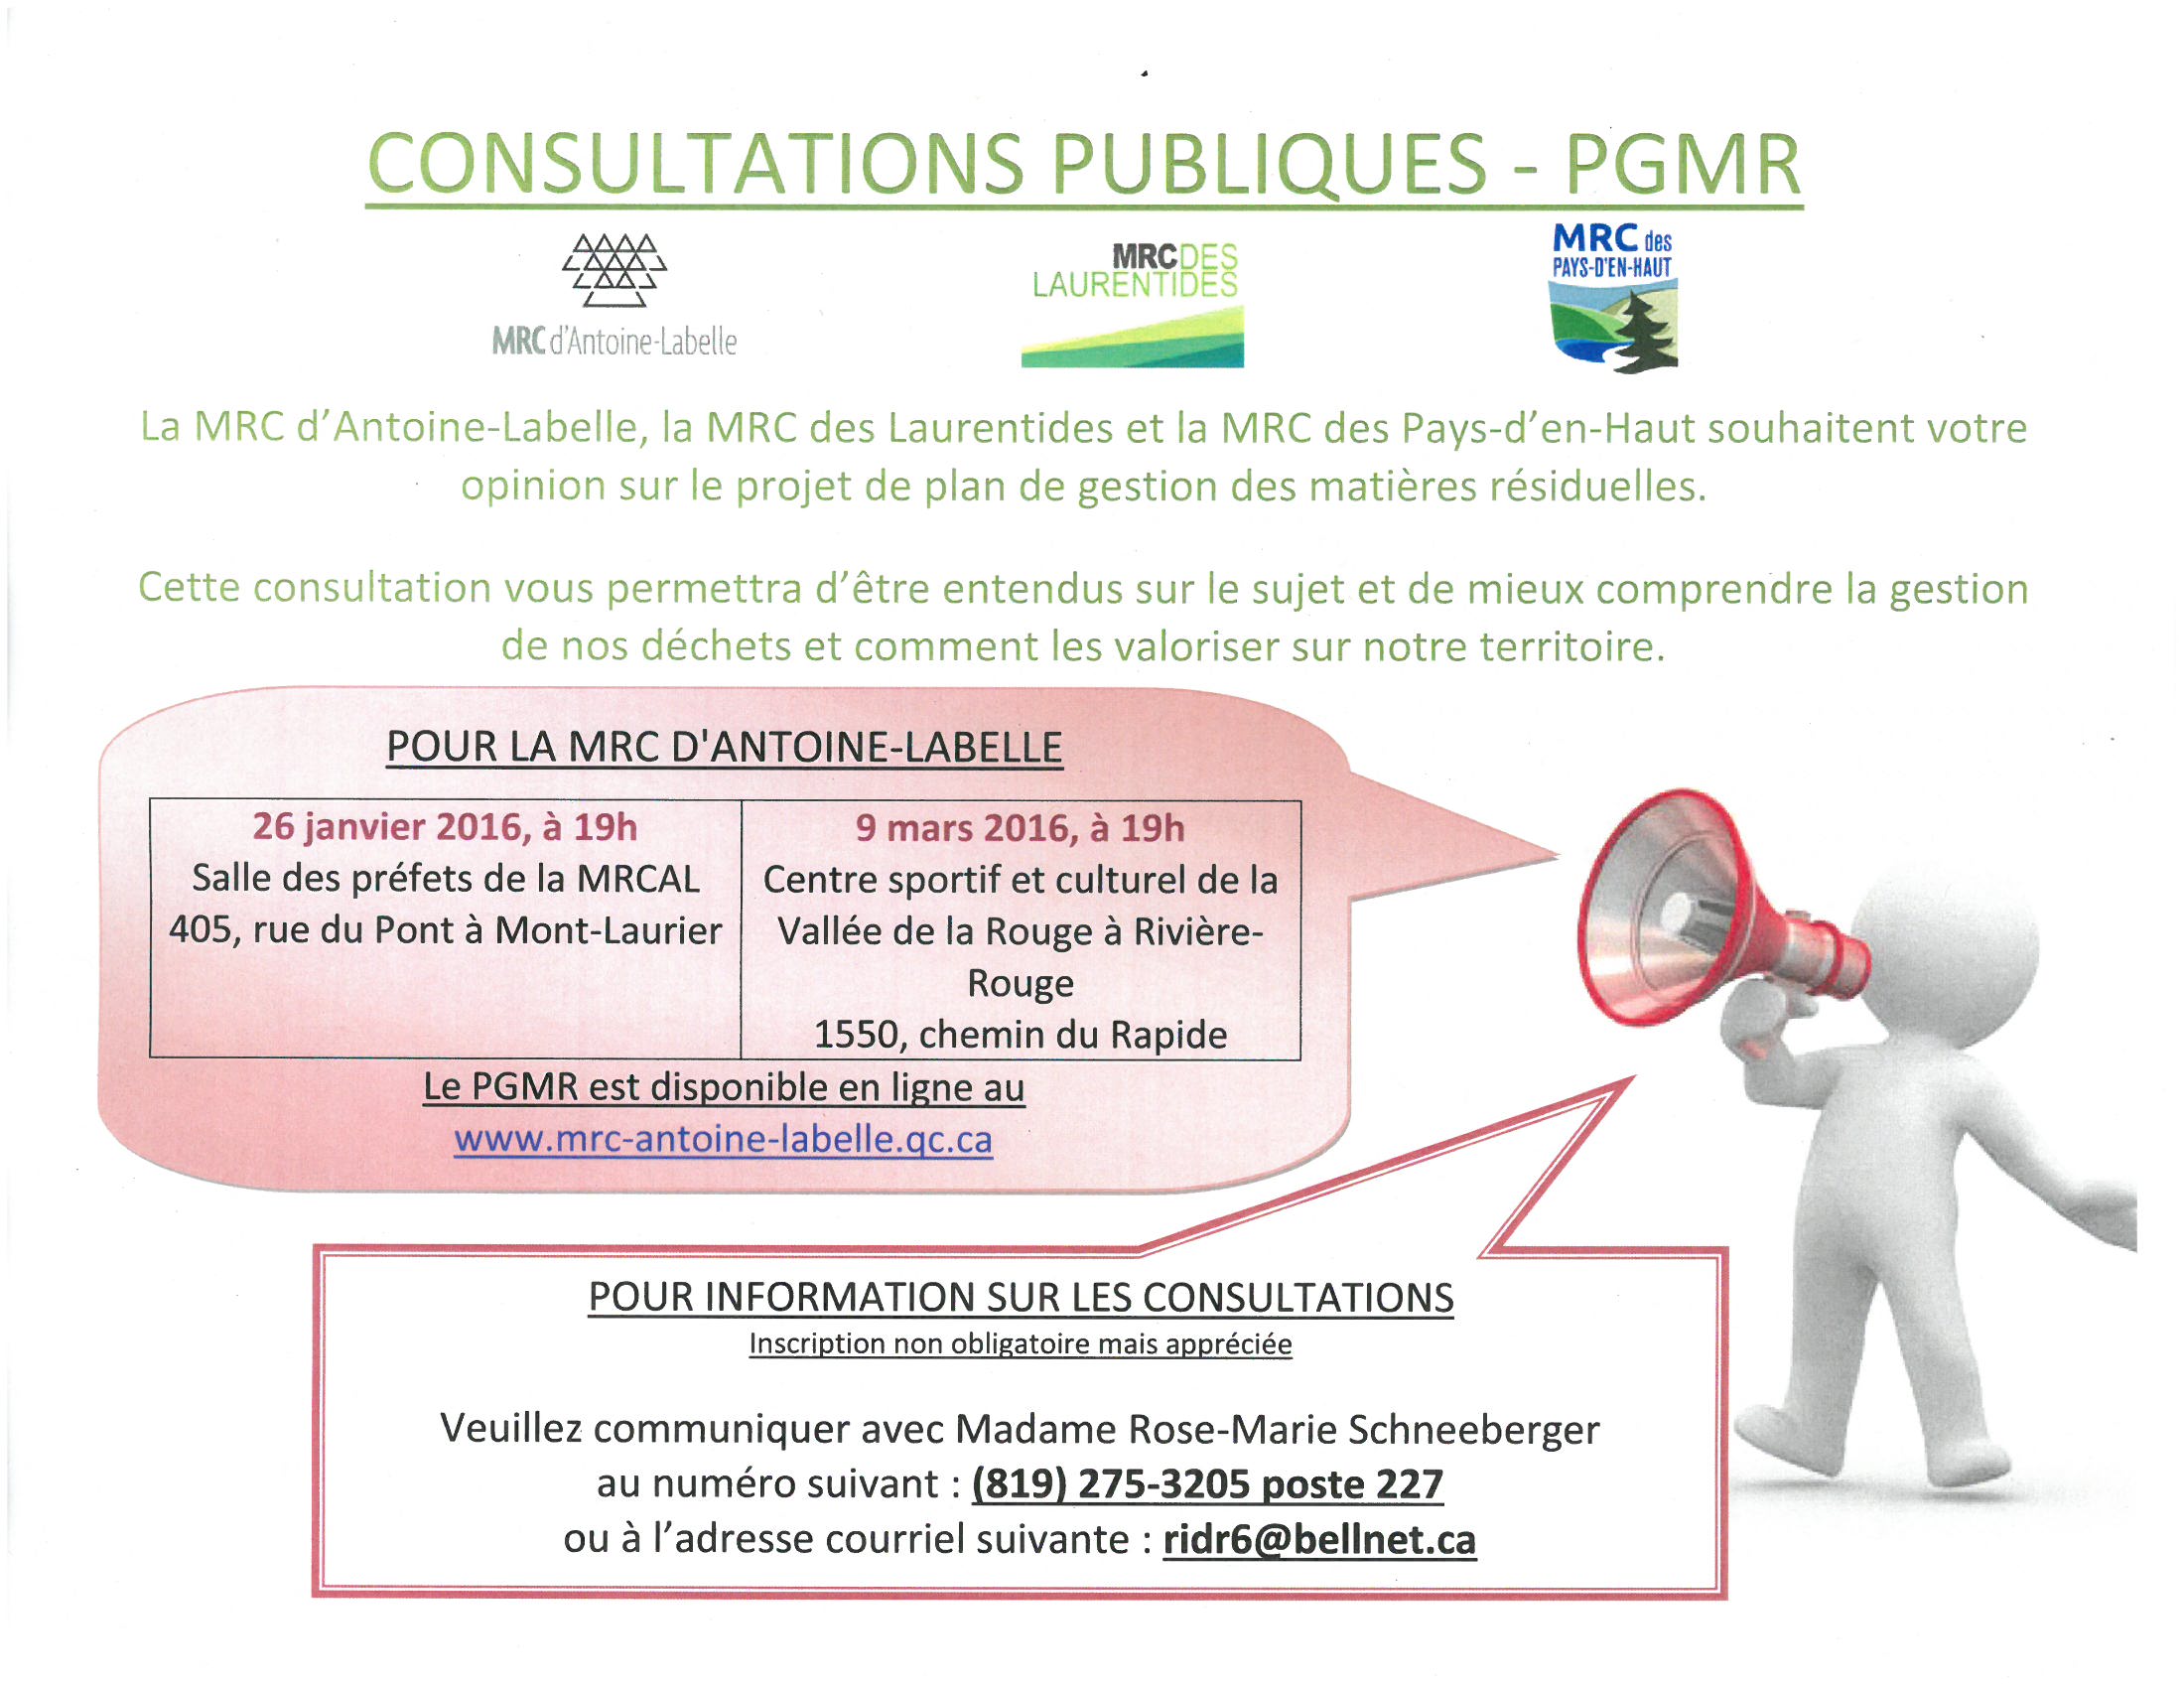 CONSULTATION PUBLIC PGMR